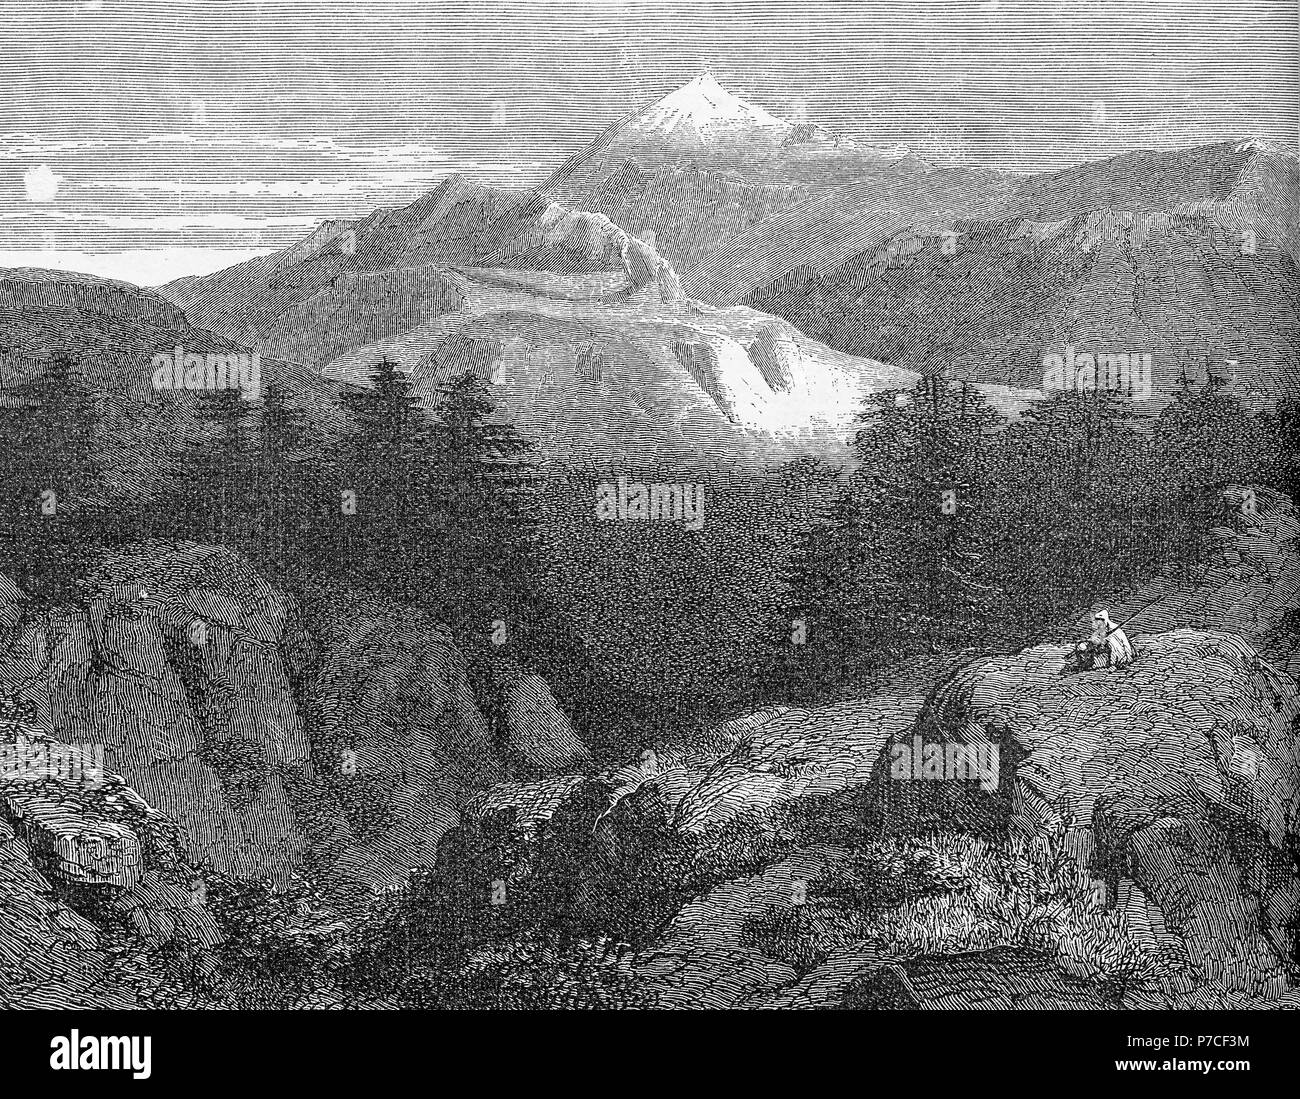 Il Libano, vista panoramica del monte Libano gamma di montagne lungo l'estensione dell'intero paese parallelamente alla costa Mediterranea, incisione vintage Foto Stock